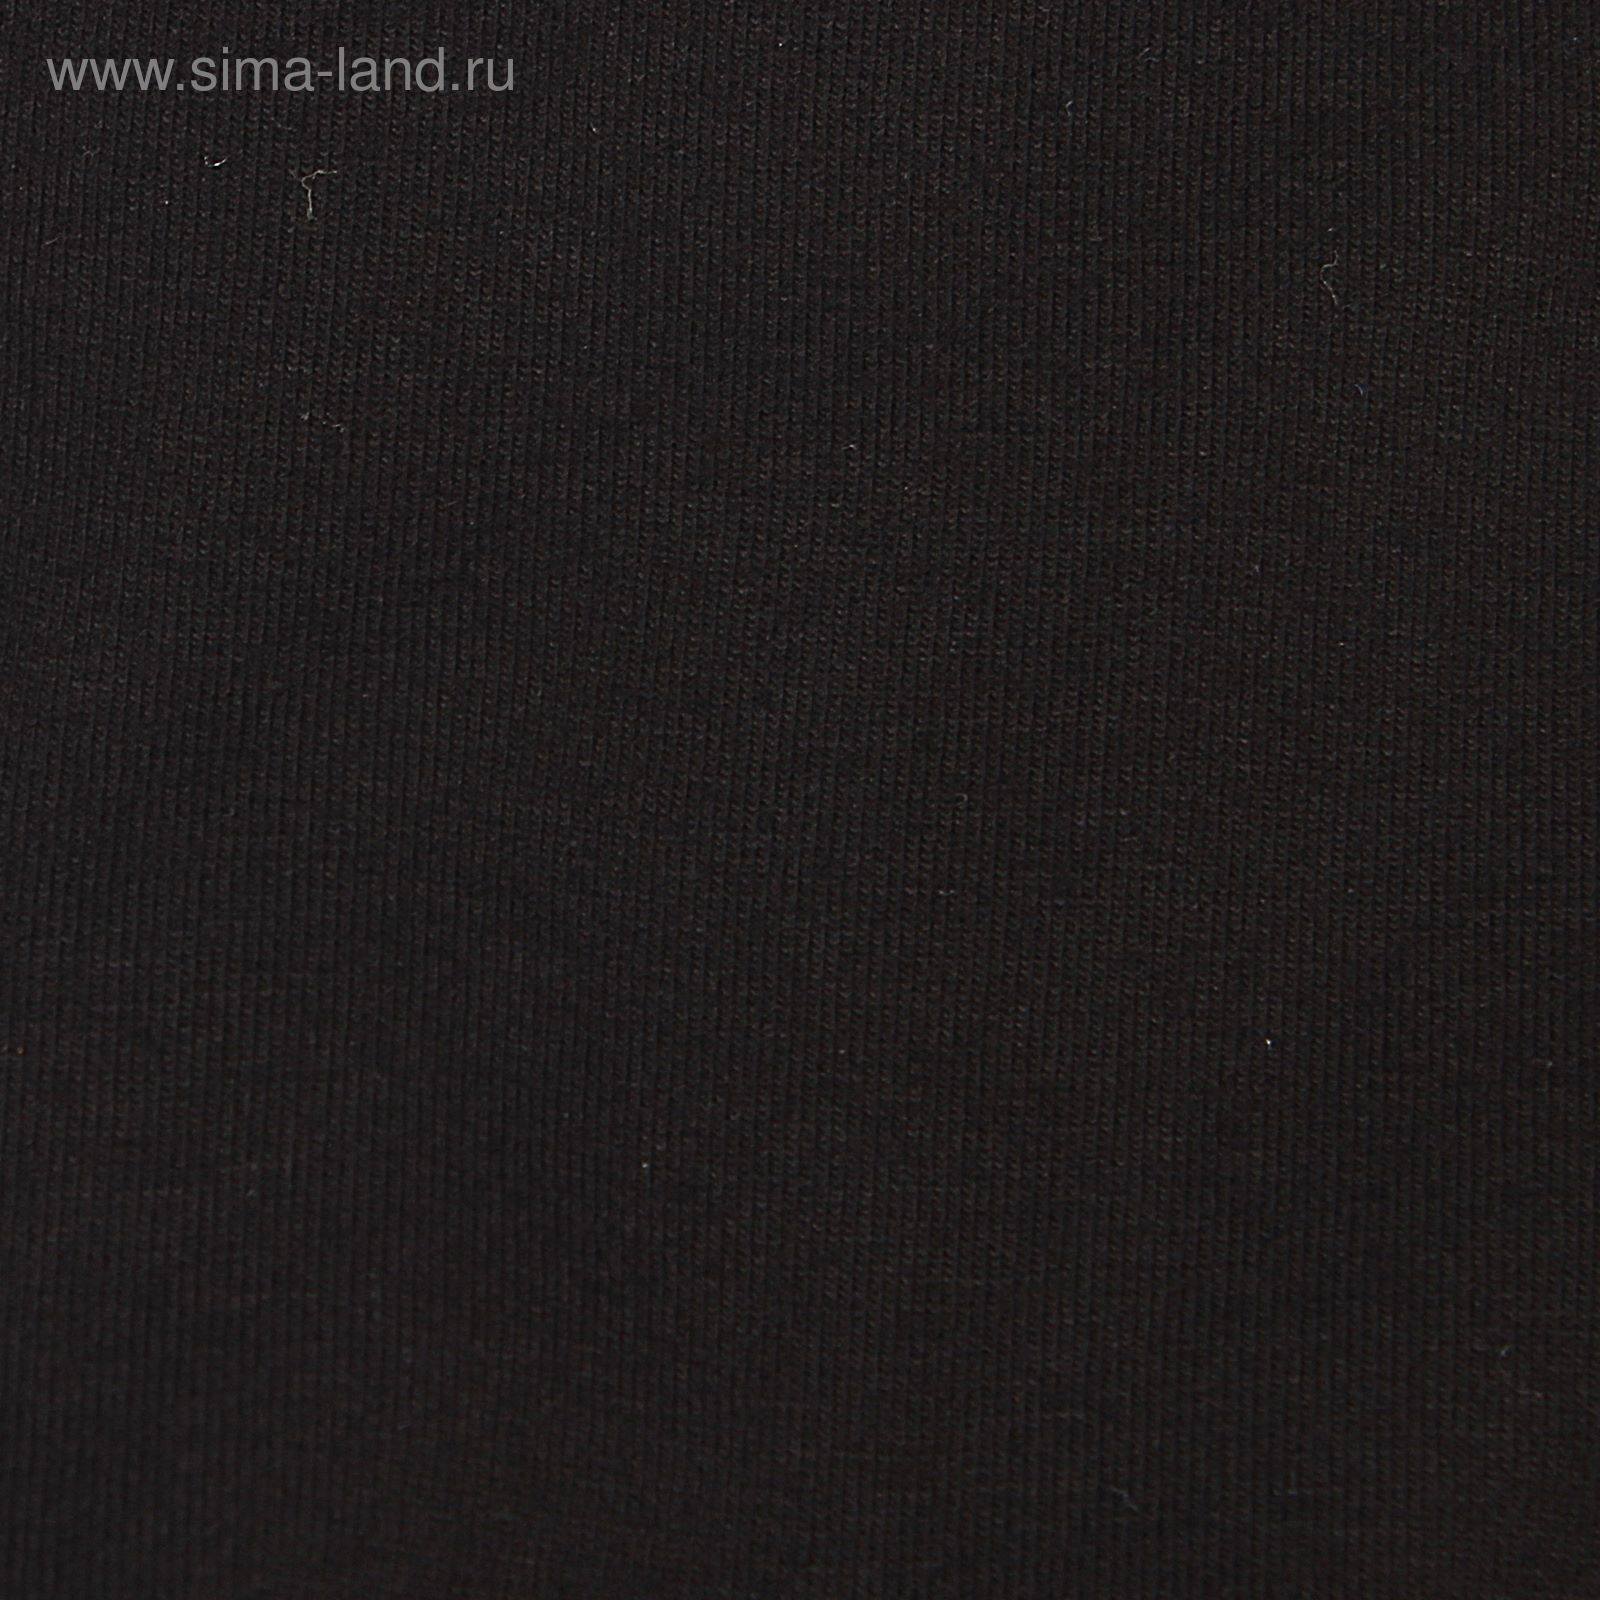 Купальник-шорты, с коротким рукавом, размер 28, цвет чёрный